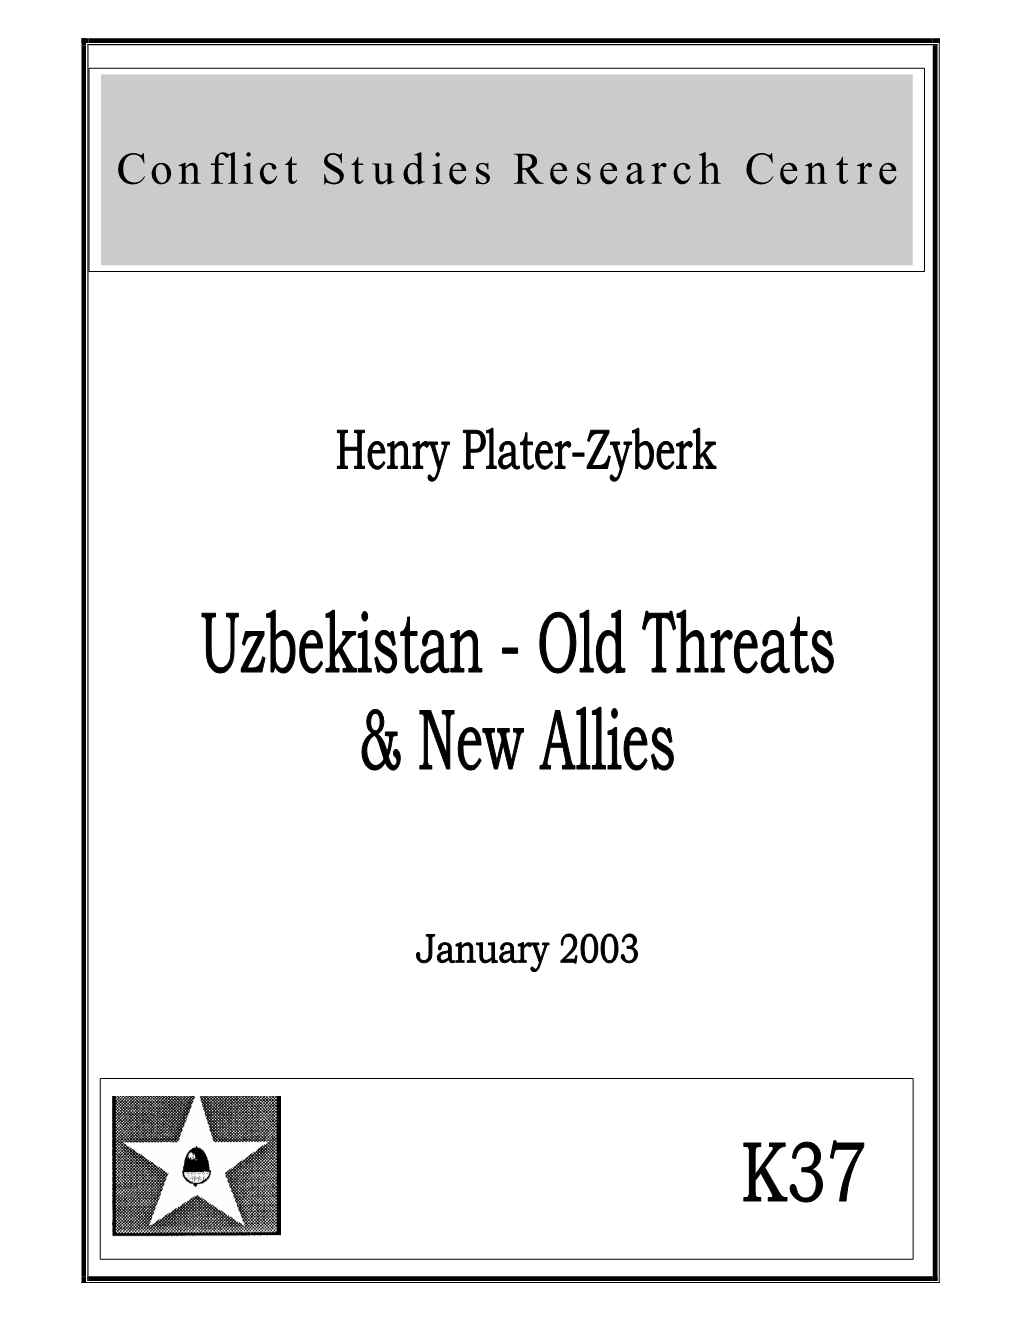 Uzbekistan - Old Threats & New Allies